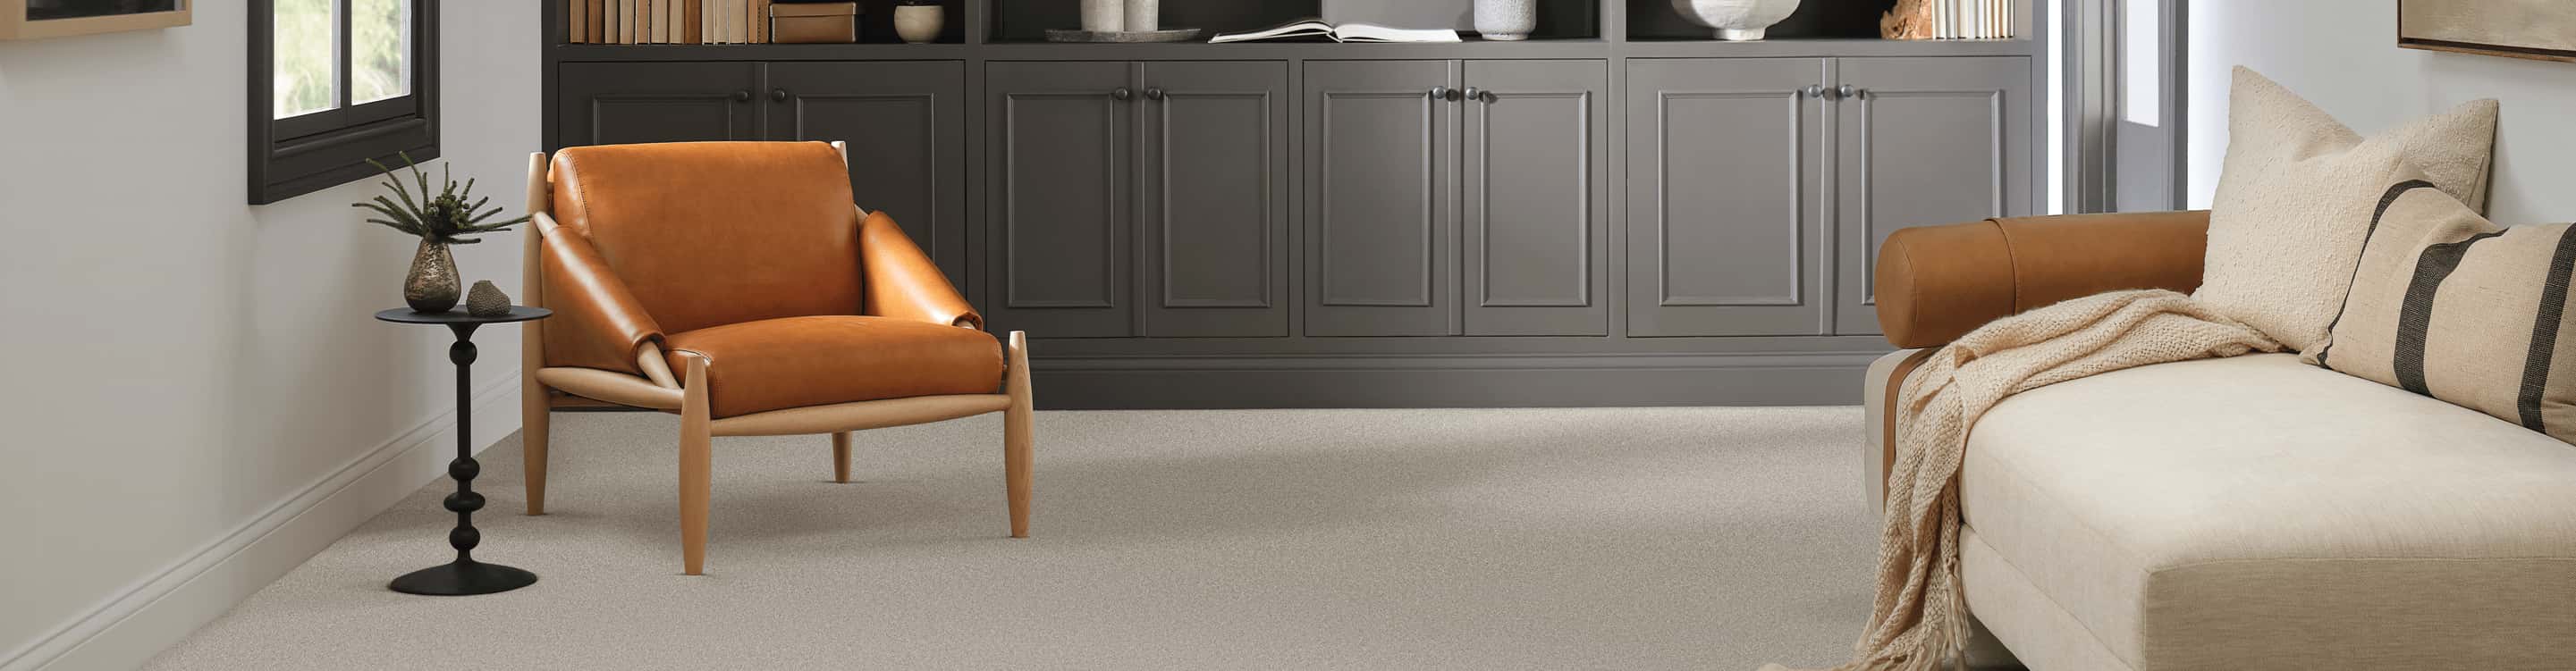 Carpet vs. Hardwood Flooring: Which Is Better